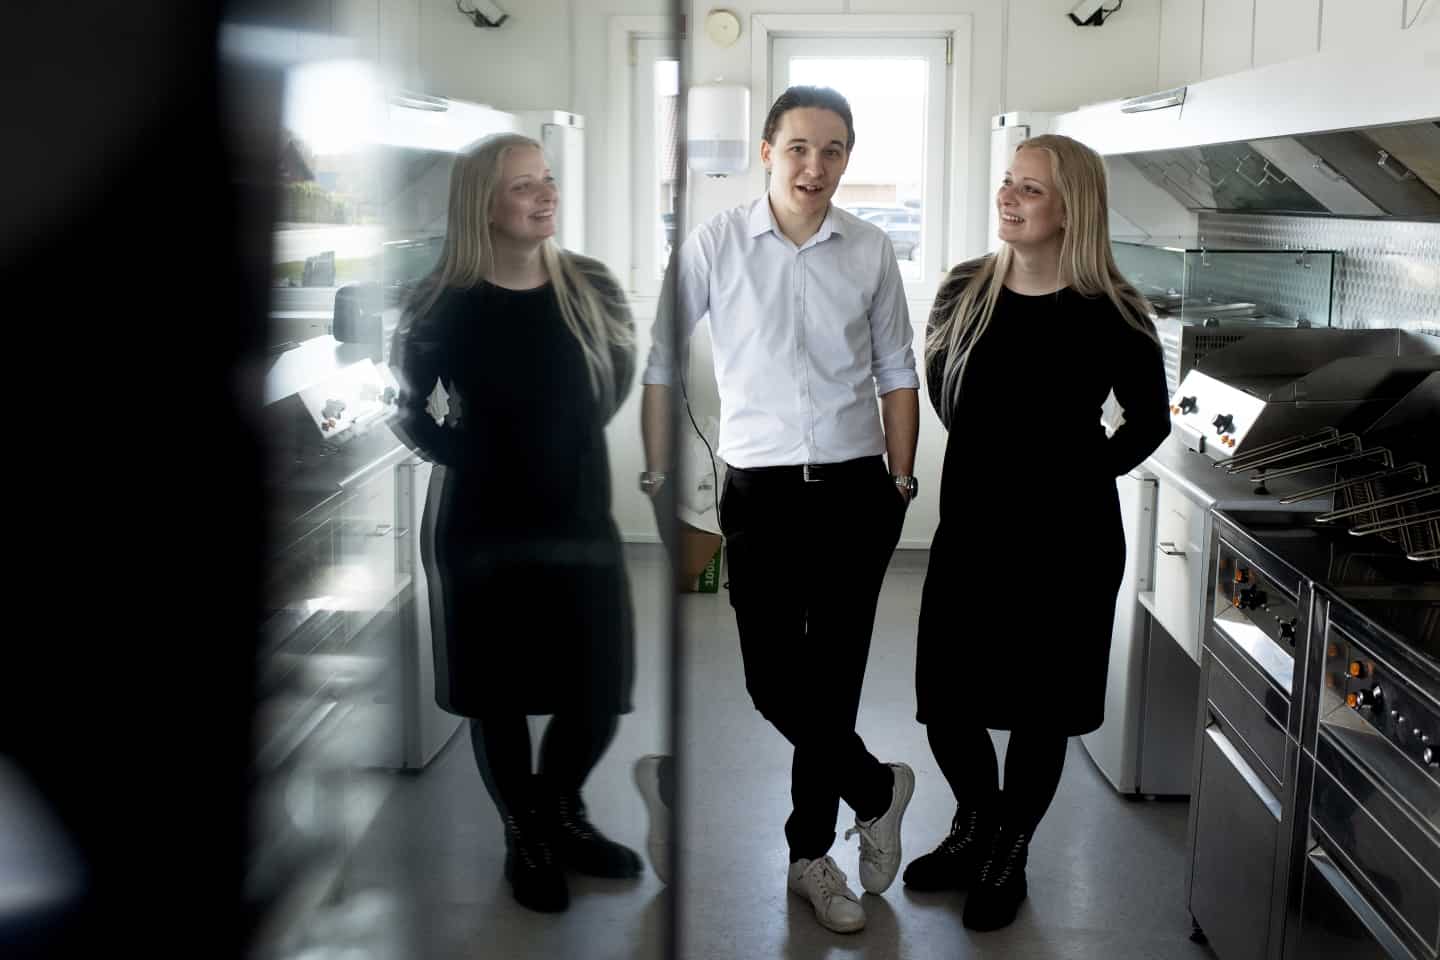 video: Ungt par flytter fra Aarhus til Varde for at drive grillbar og stifte familie | jv.dk